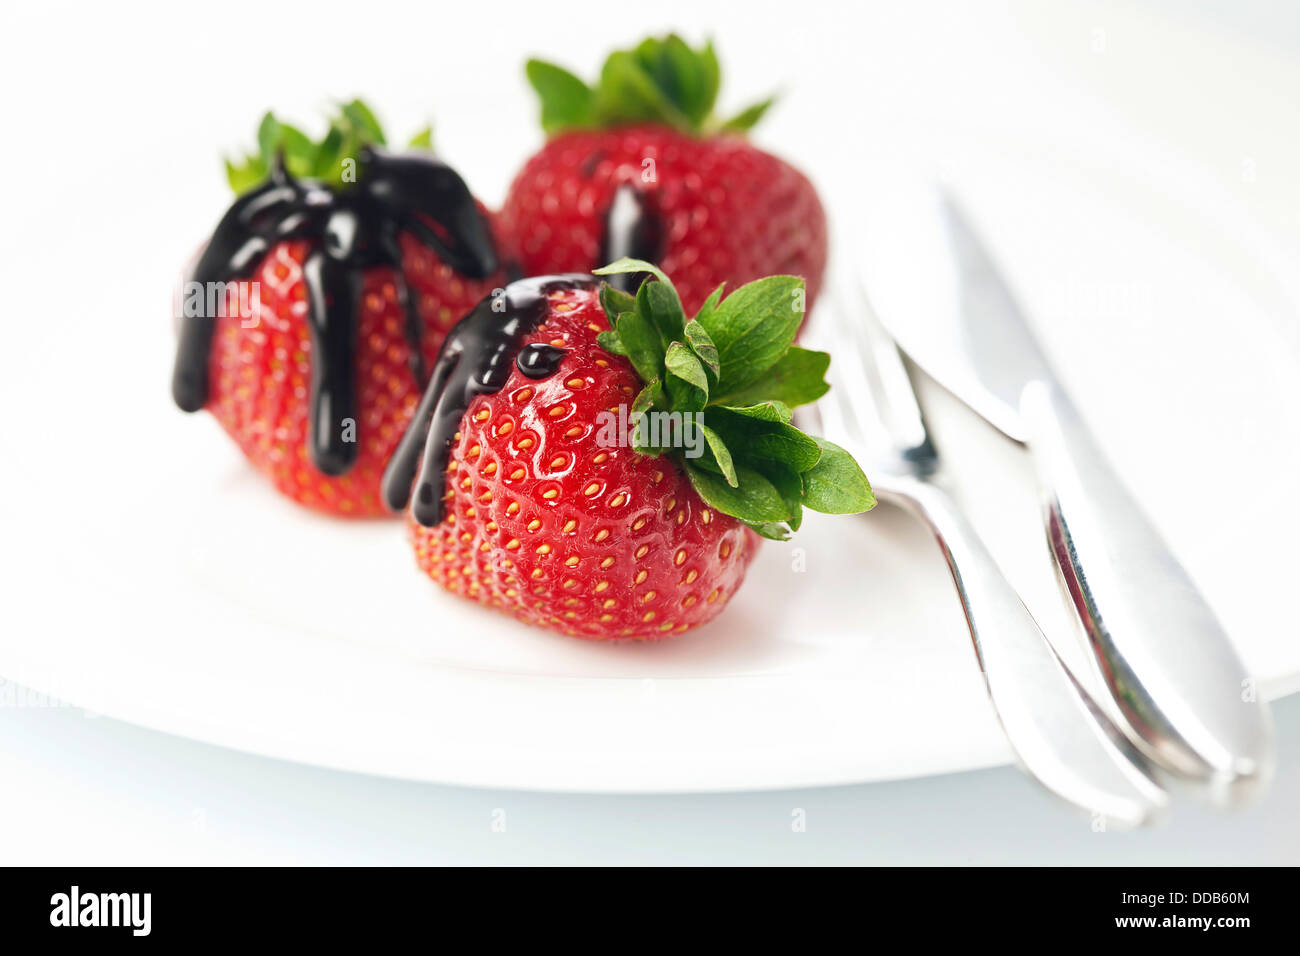 Les fraises au chocolat sur fond blanc Banque D'Images